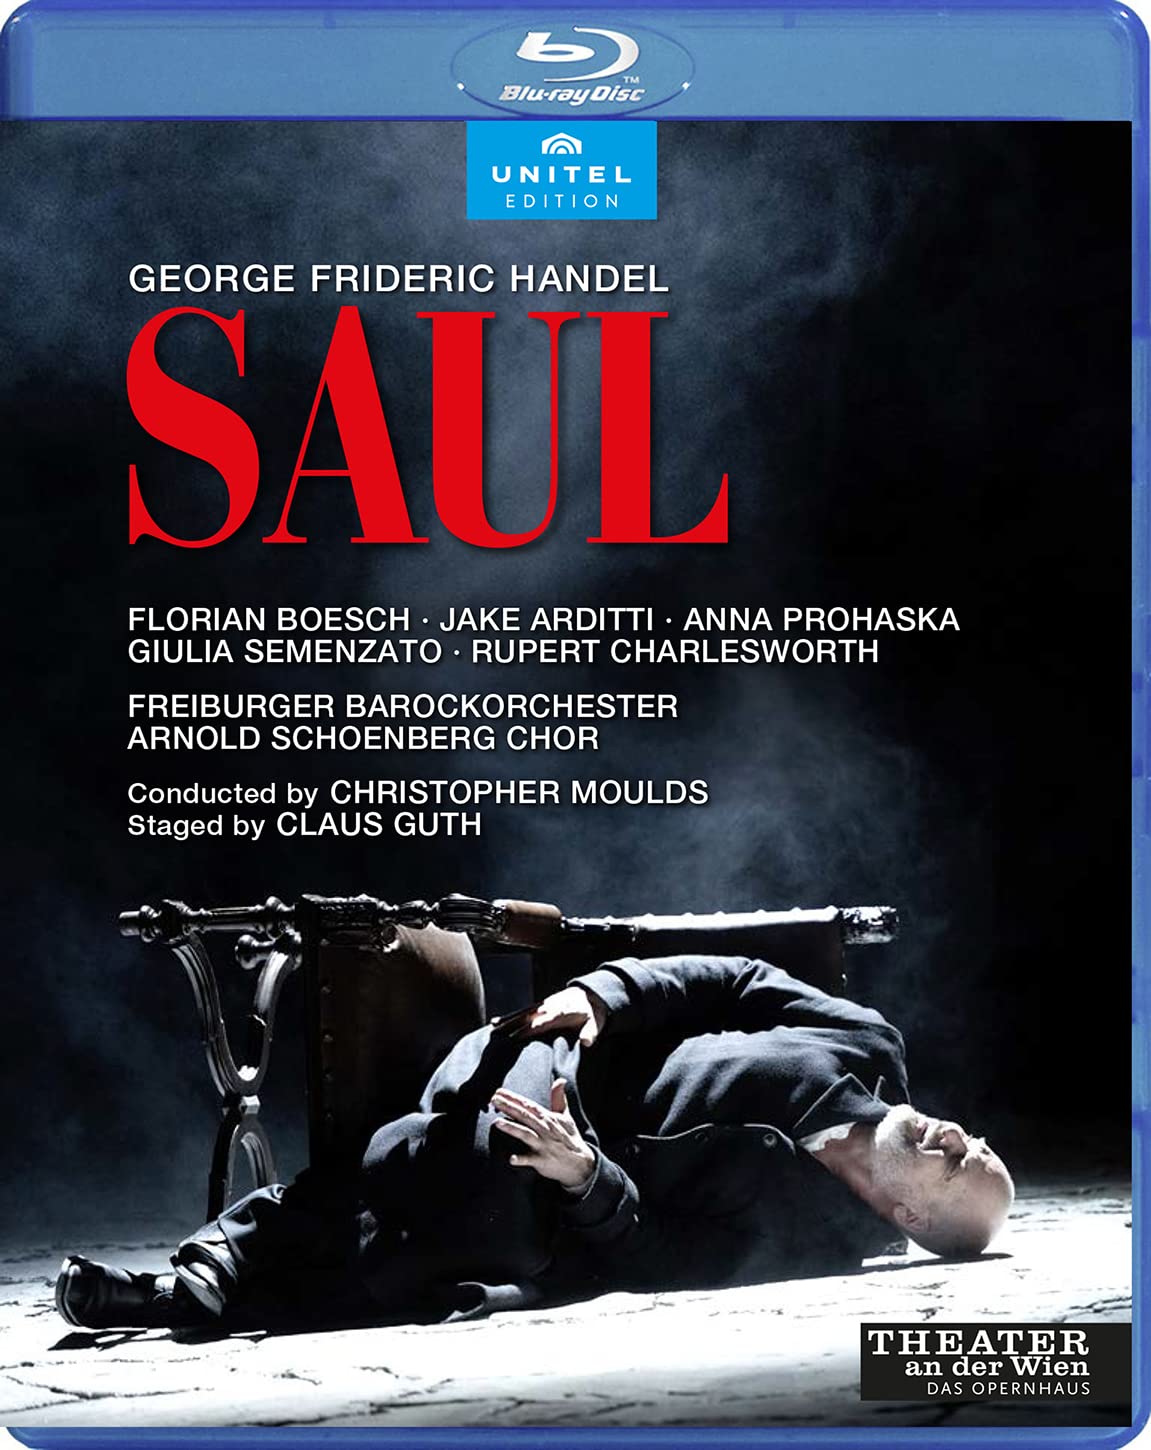 Music Blu-Ray Georg Friedrich Handel - Saul NUOVO SIGILLATO, EDIZIONE DEL 09/02/2022 SUBITO DISPONIBILE